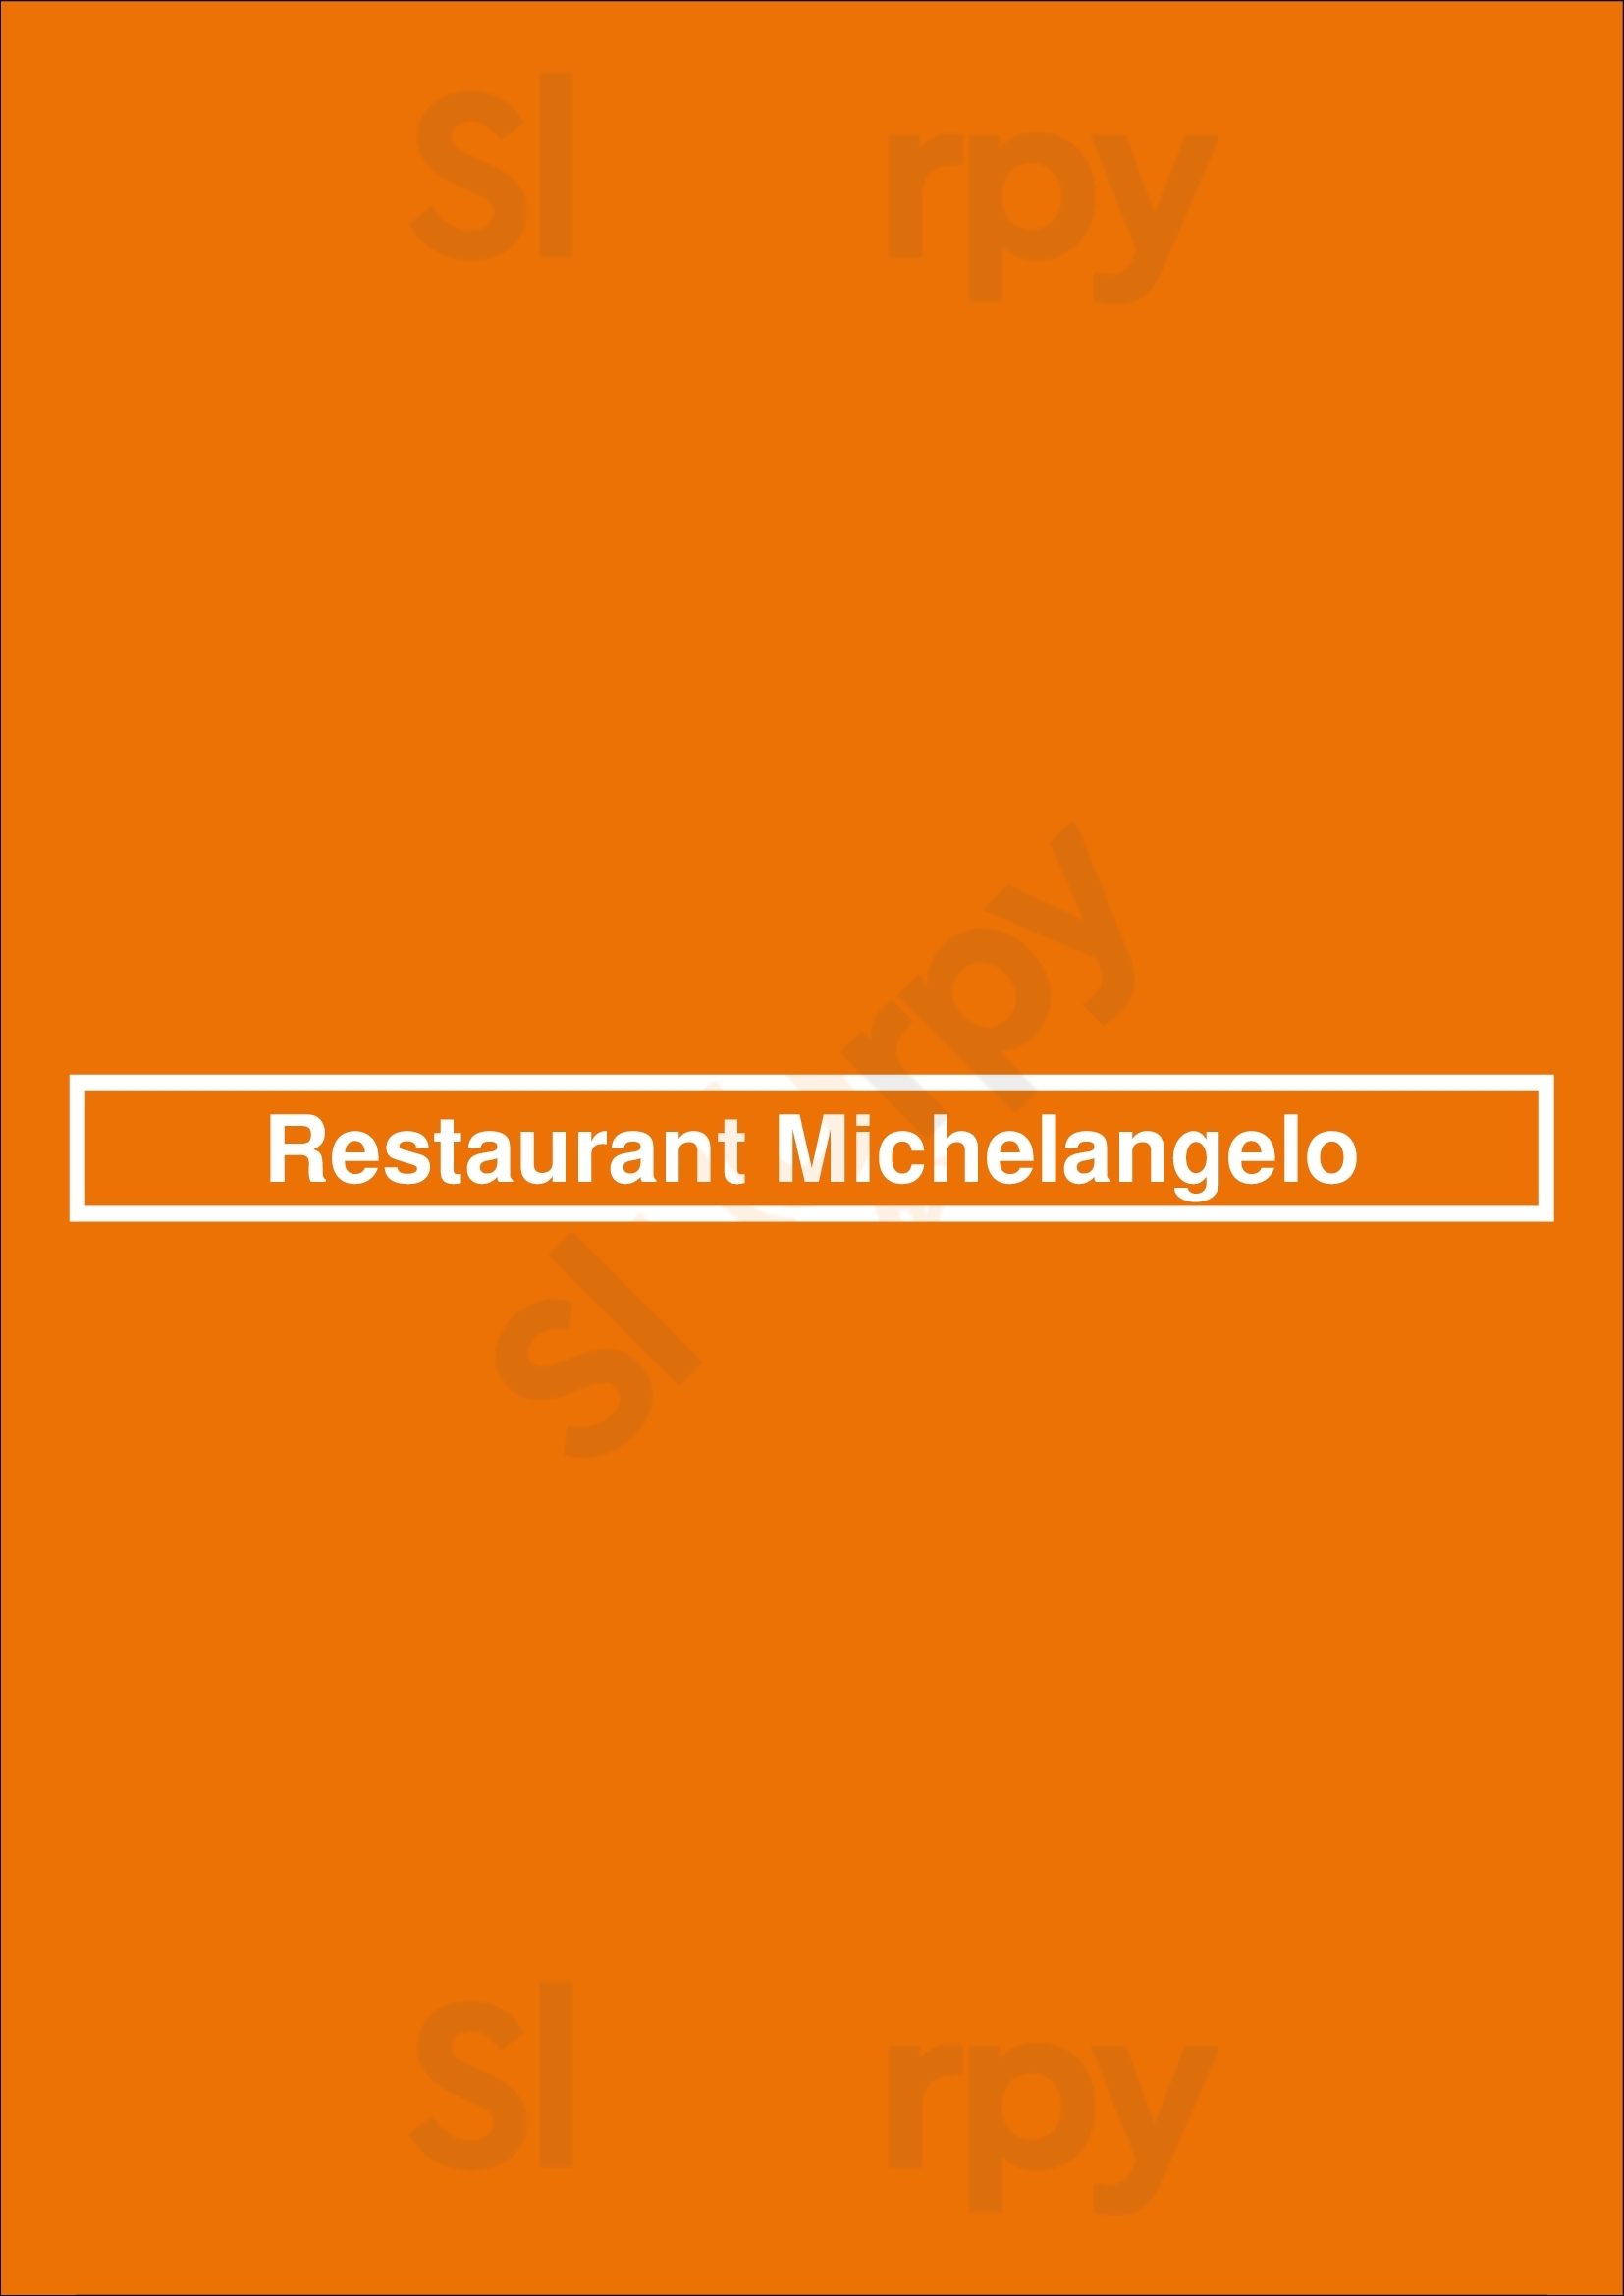 Restaurant Michelangelo Amsterdam Menu - 1